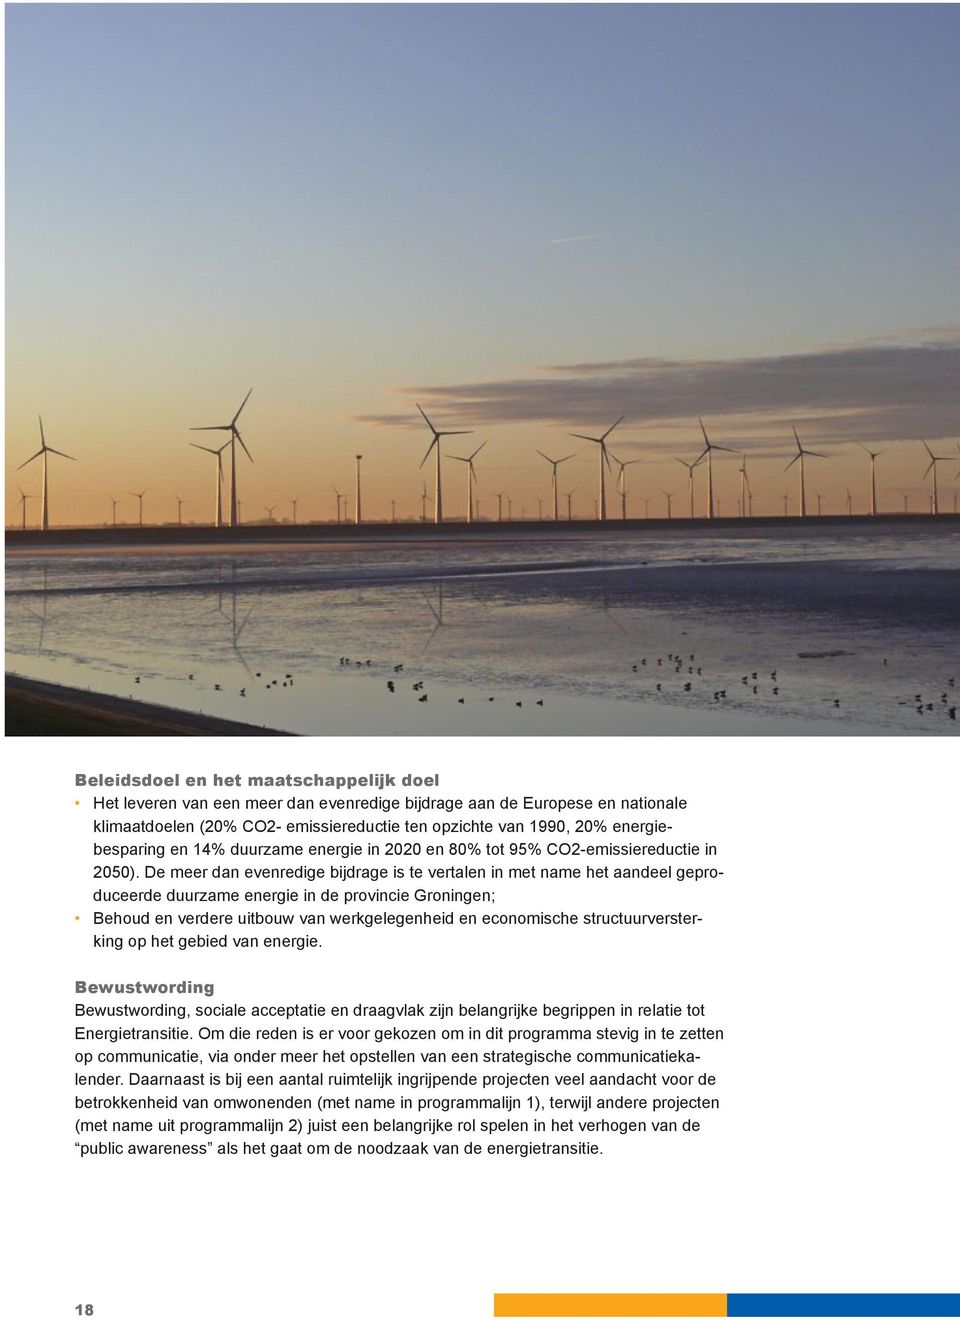 De meer dan evenredige bijdrage is te vertalen in met name het aandeel geproduceerde duurzame energie in de provincie Groningen; Behoud en verdere uitbouw van werkgelegenheid en economische